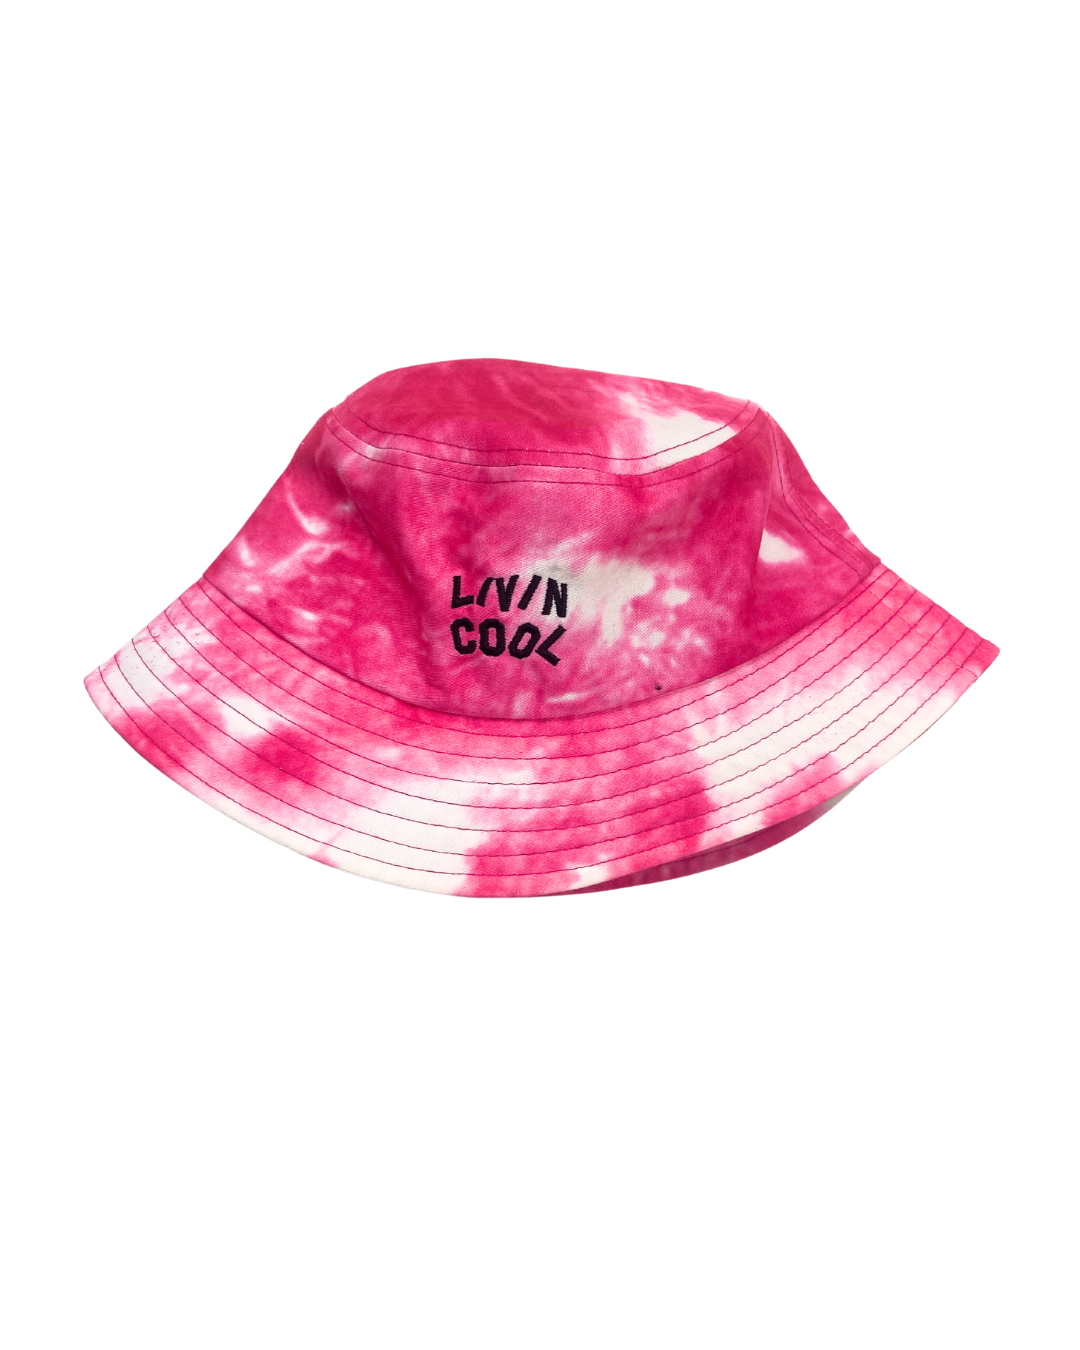 Living Cool&quot; Pink Tie Dye Bucket Hat